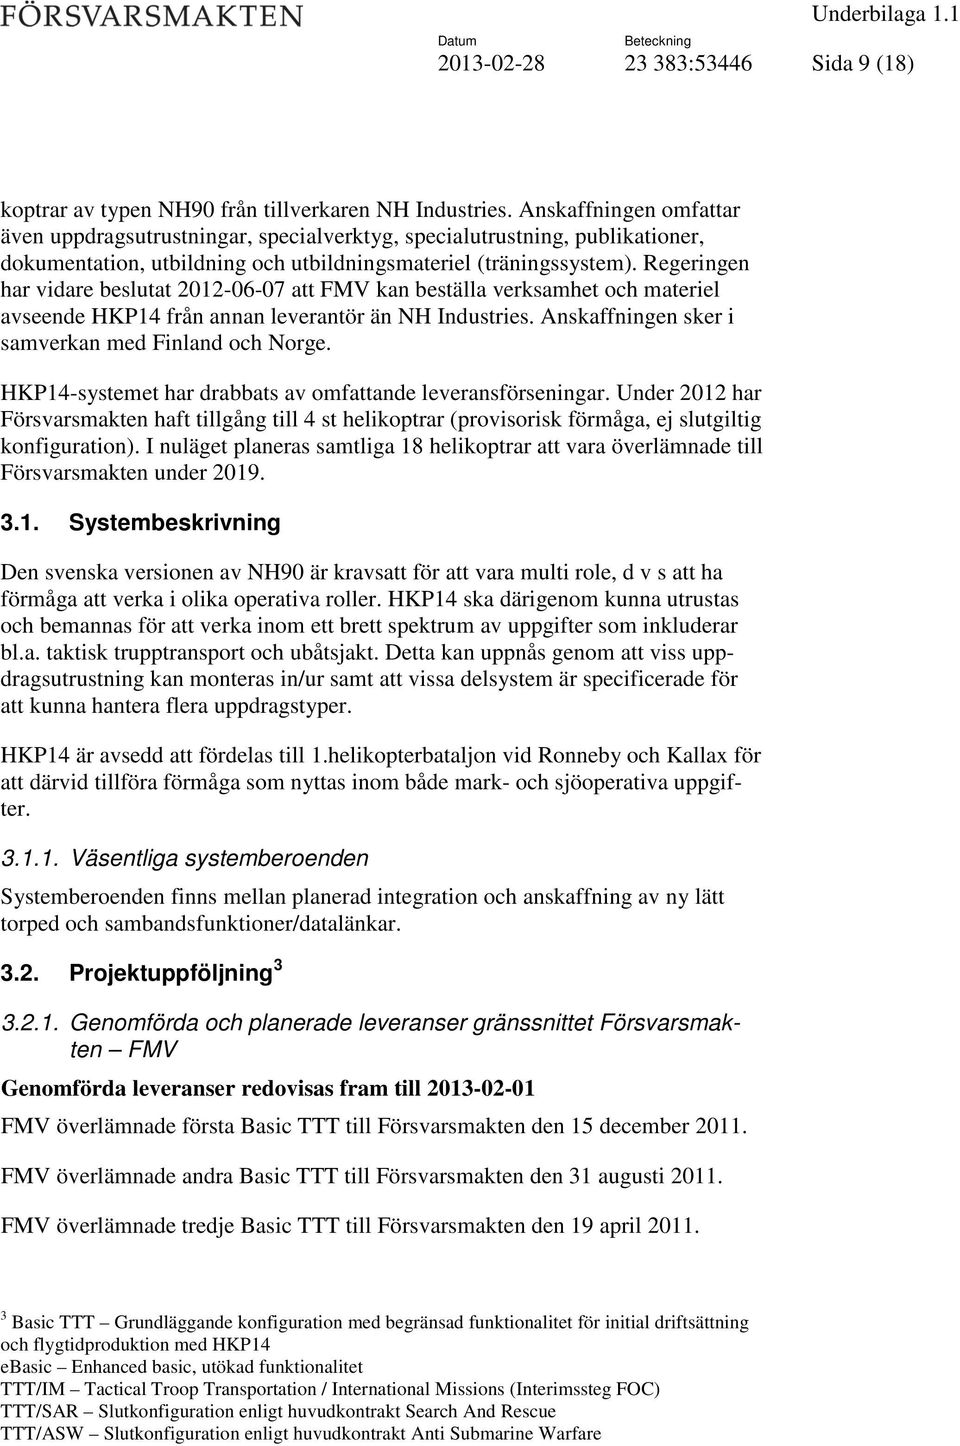 Regeringen har vidare beslutat 2012-06-07 att FMV kan beställa verksamhet och materiel avseende HKP14 från annan leverantör än NH Industries. Anskaffningen sker i samverkan med Finland och Norge.